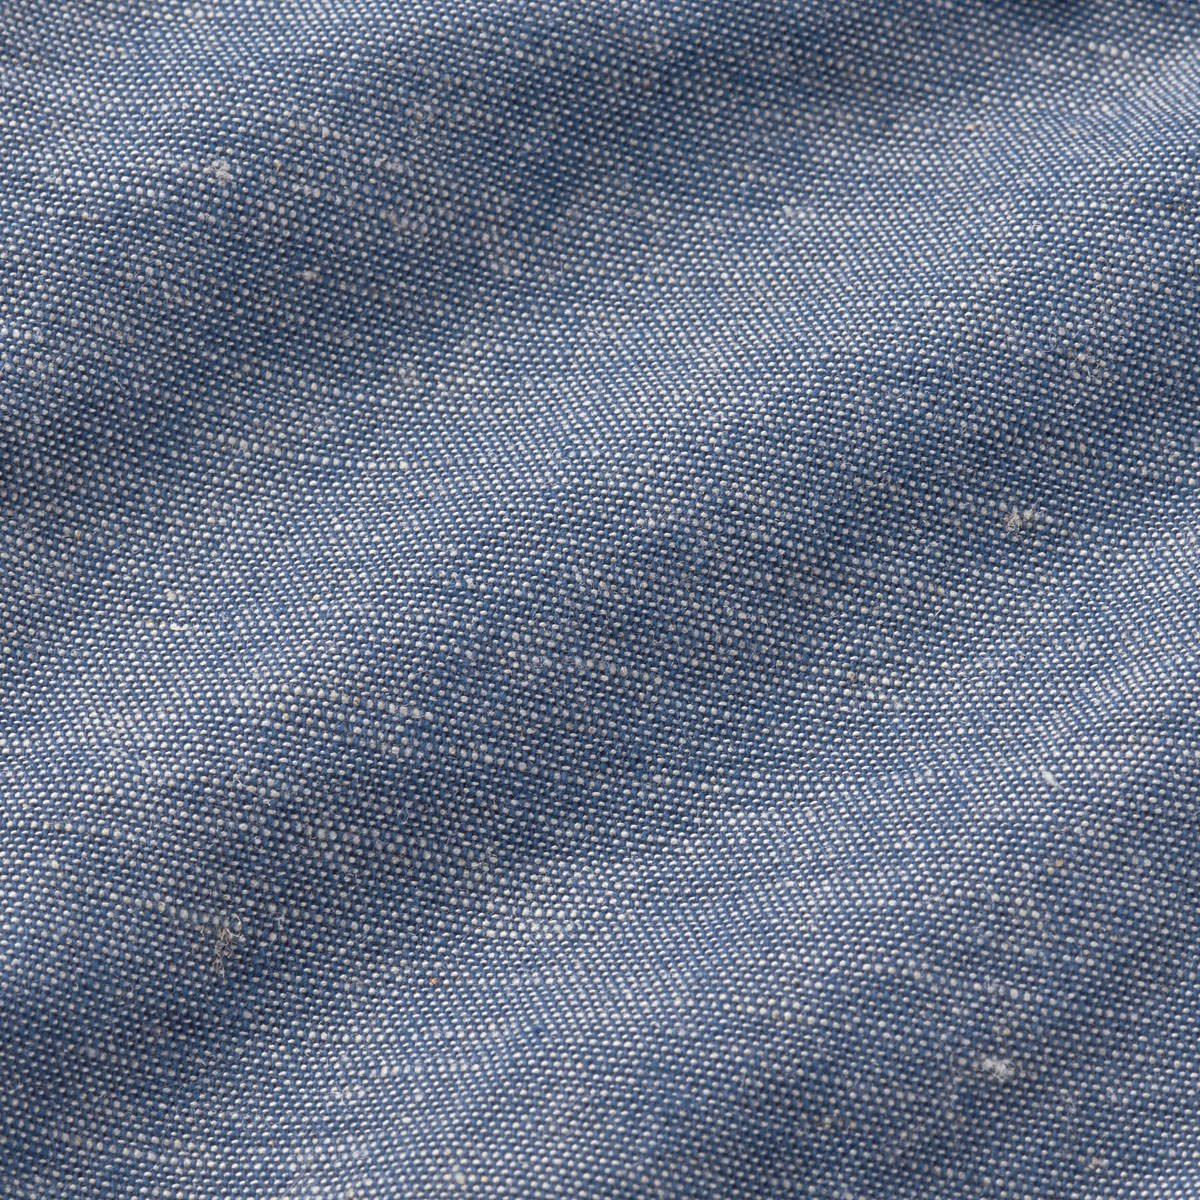 DOUBLE_B Vintage Cotton Linen Blend Shorts - 62-3106-264-03-80